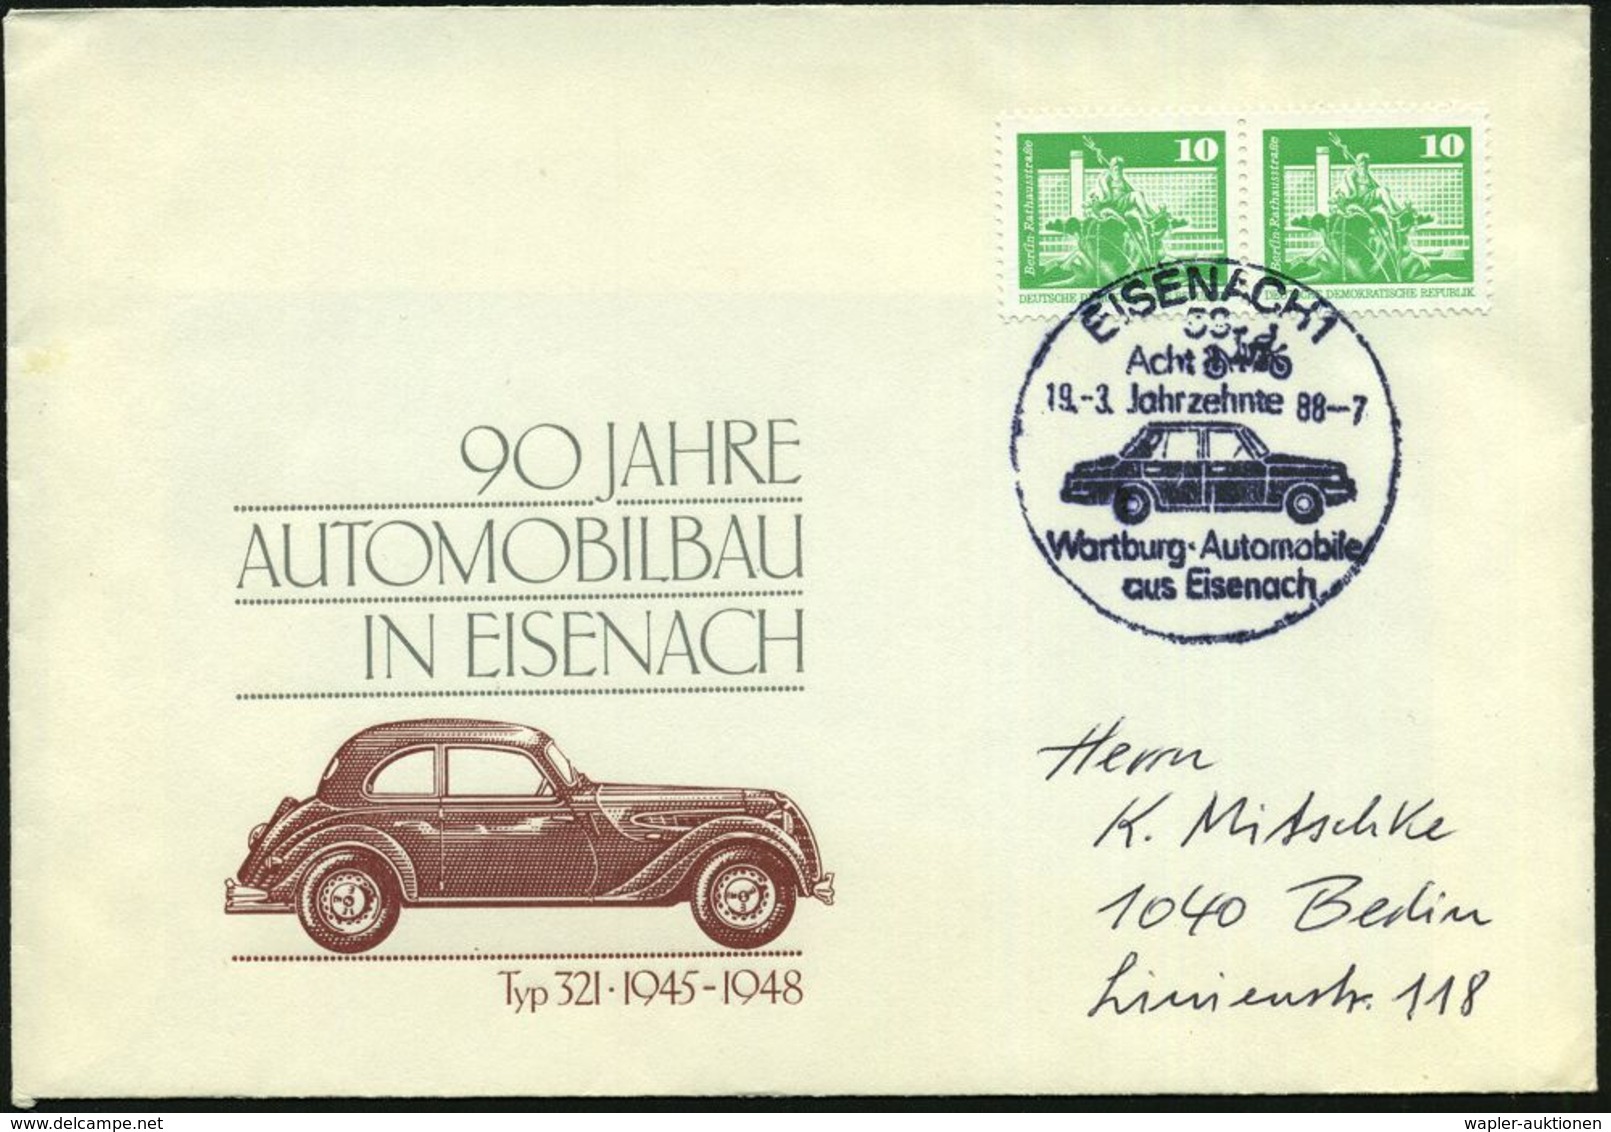 58 EISENACH 1/ Acht/ Jahrzehnte/ Wartburg-Automobile.. 1988 (19.3.) HWSt = "Wartburgwagen" Von 1898 = BMW-Vorläufer (u.  - Autos